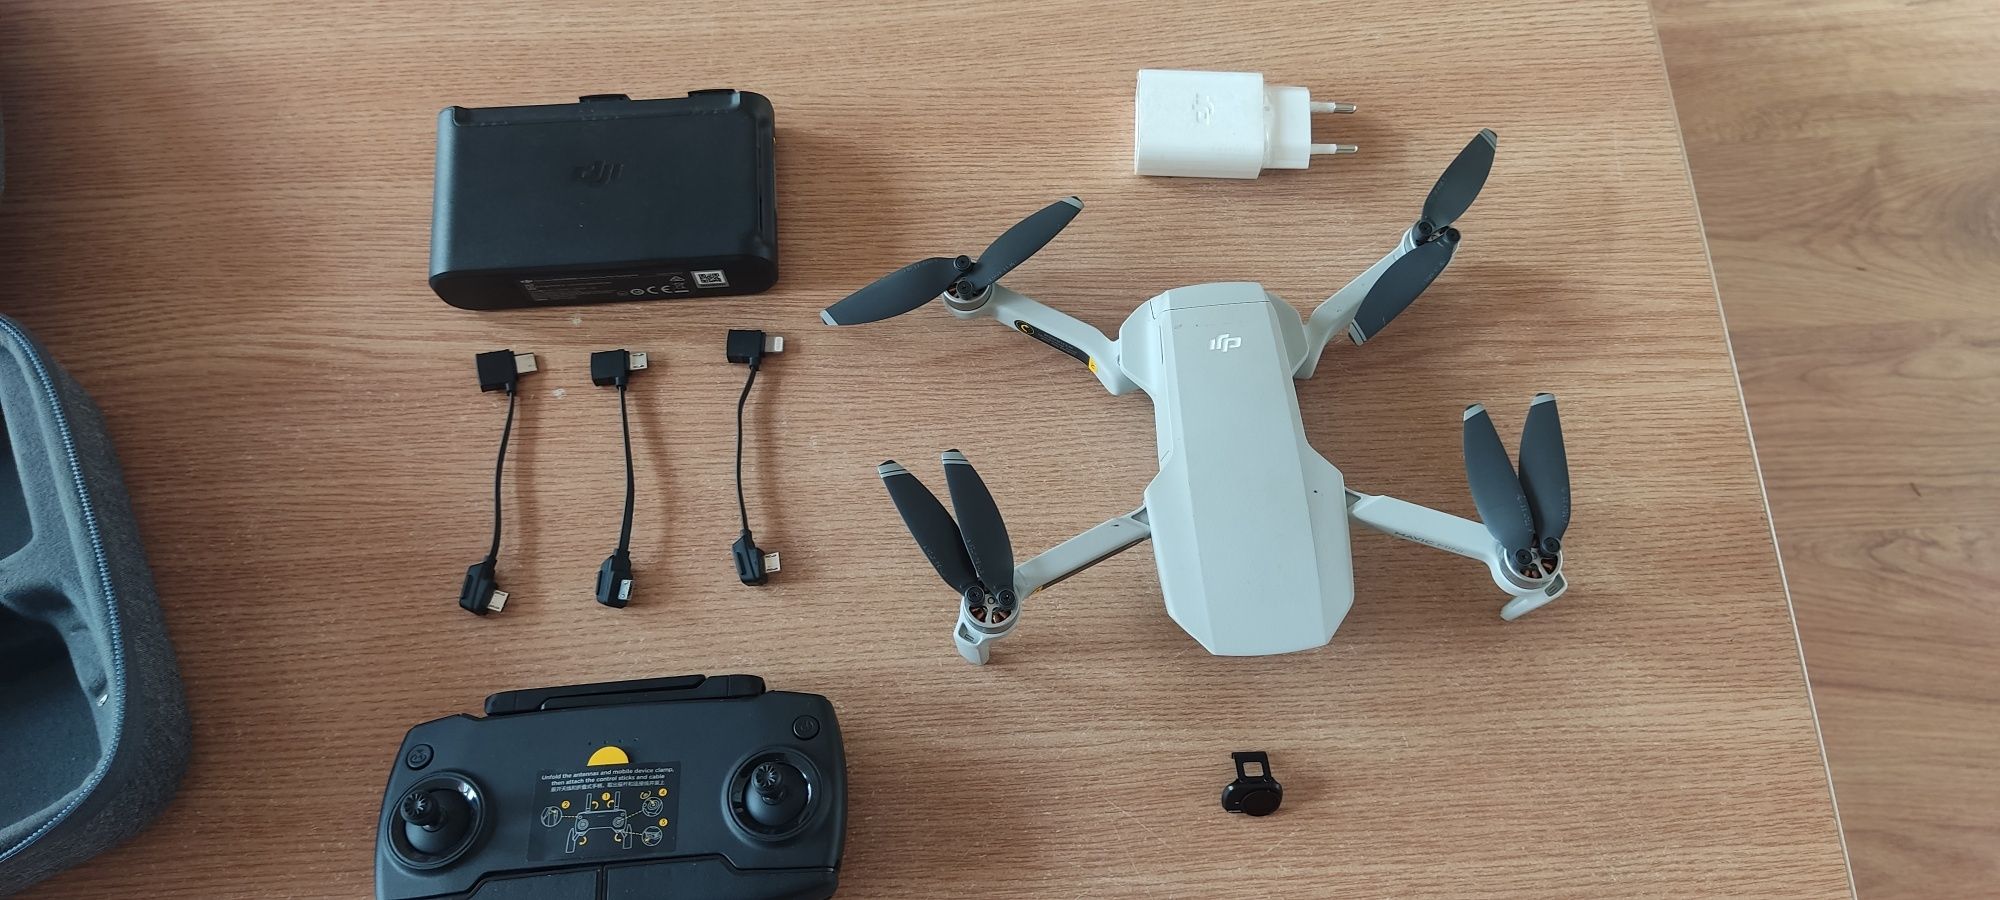 Dji Mavic Mini dron 249 gram